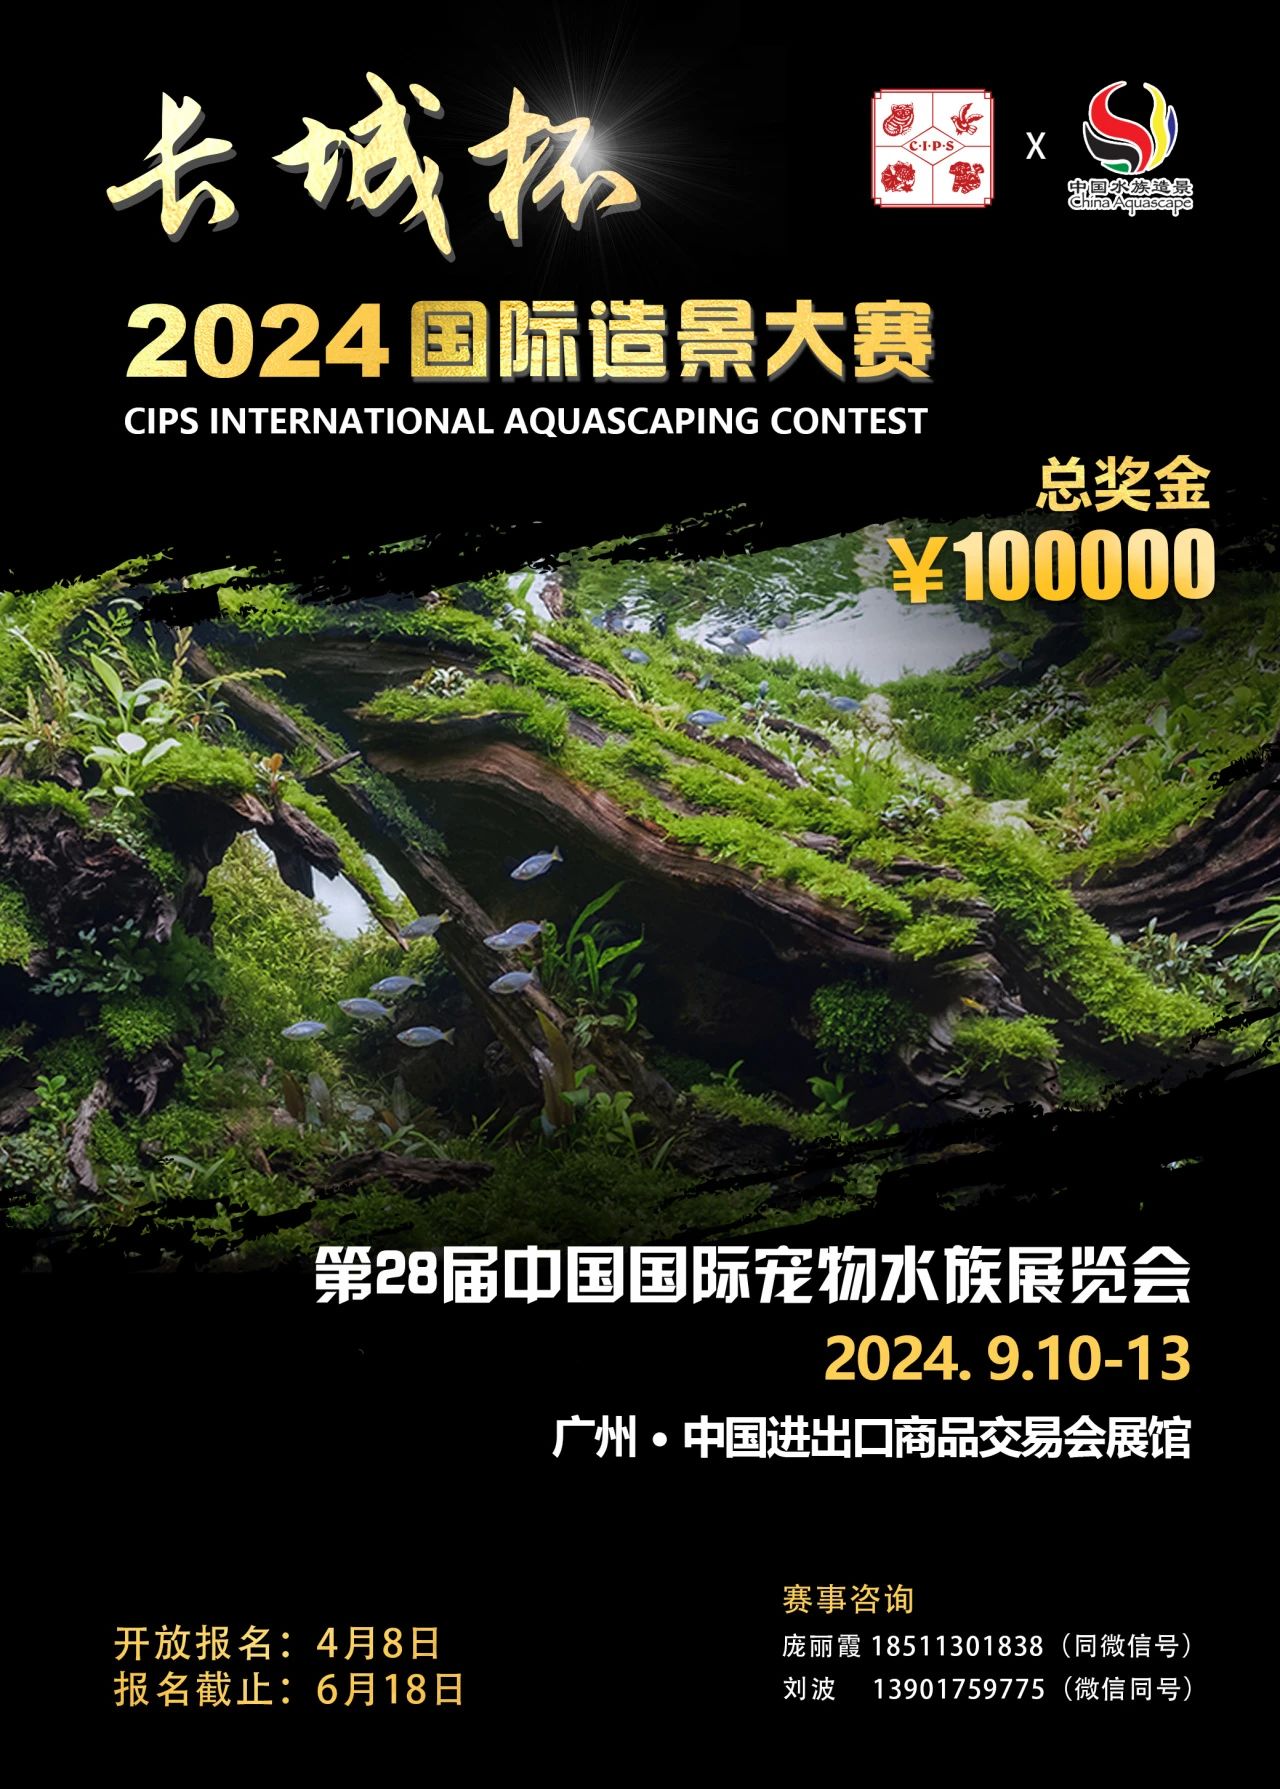 第28届中国国际宠物水族展览会（CIPS 2024）将于2024年9月10-13日在广州•中国进出口商品交易会展馆举办。